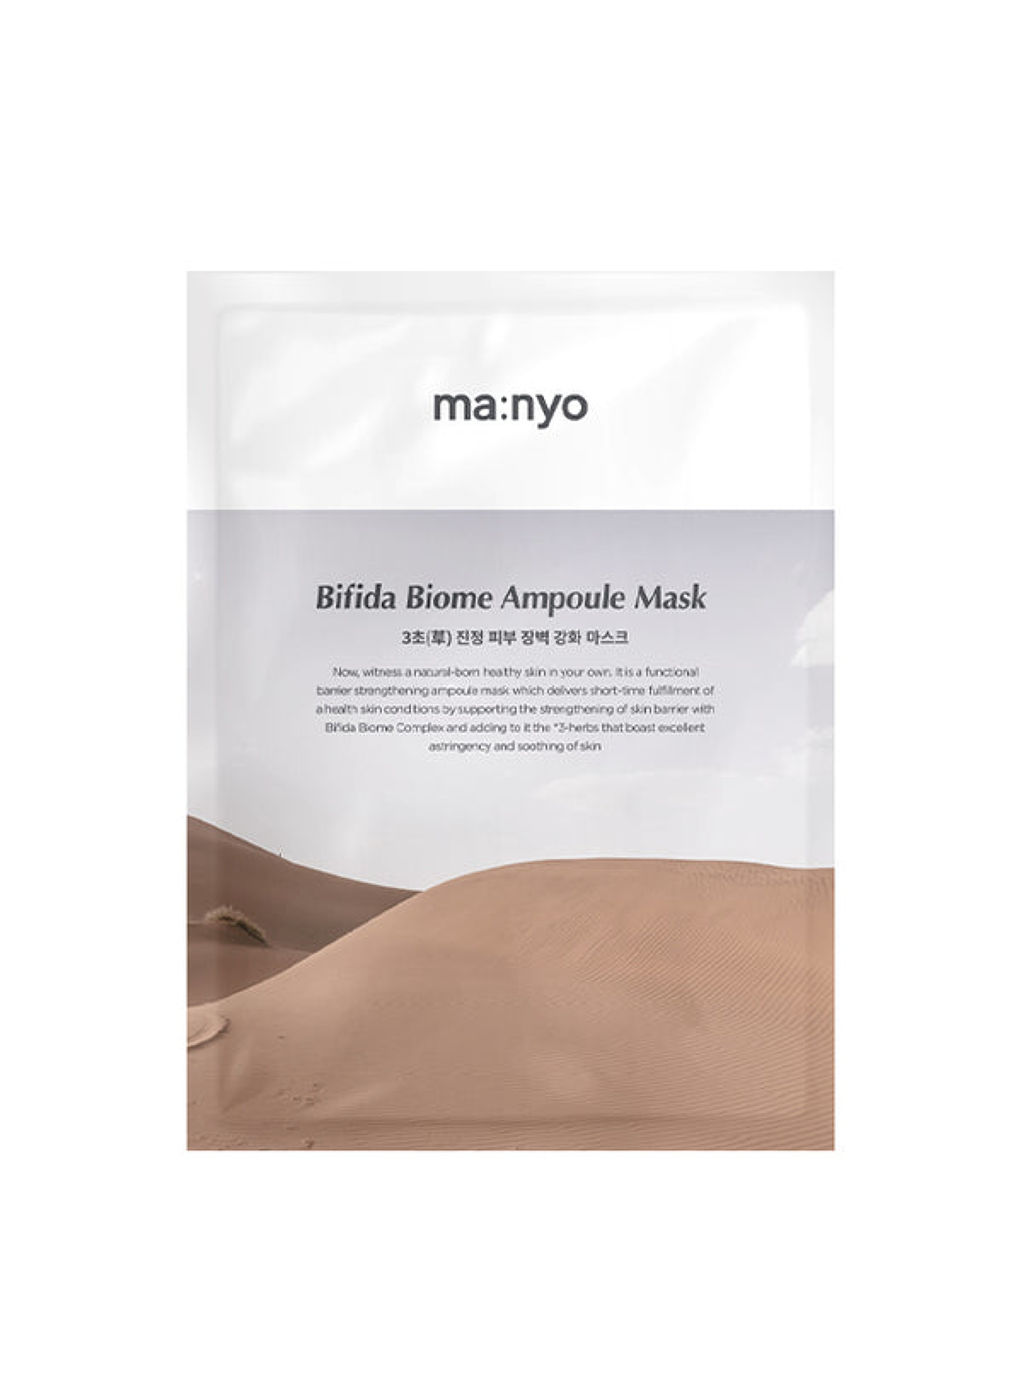 Manyo Bifida Biome Ampoule Mask - bifidabiomeampoulemask_600x.jpg